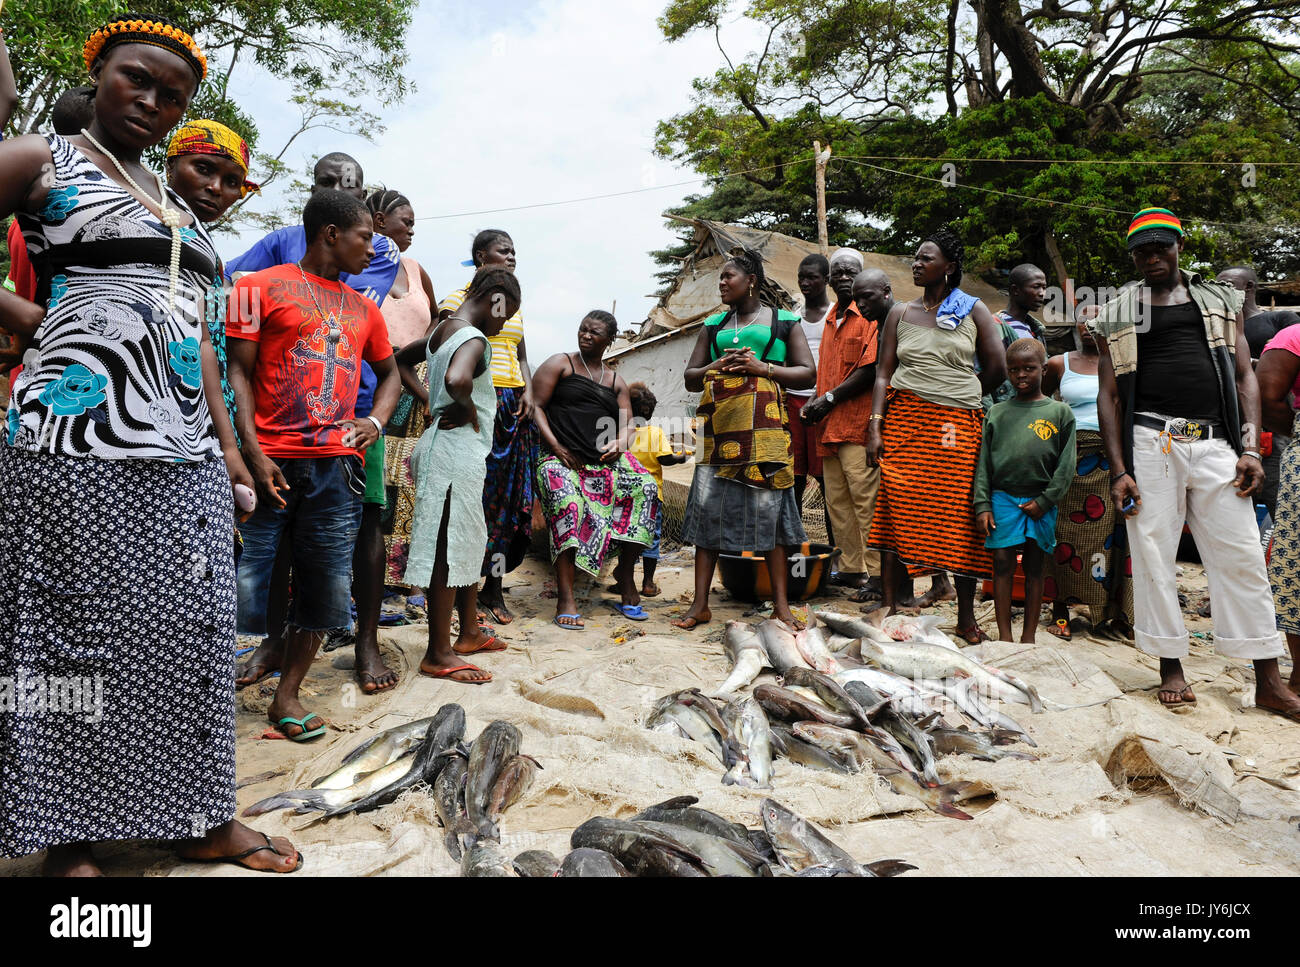 SIERRA LEONA, Tombo, mercado de pescado, la seguridad alimentaria y el sustento de los pequeños pescadores de la costa están afectados por la sobreexplotación de los mares por grandes flotas internacionales arrastrero Foto de stock